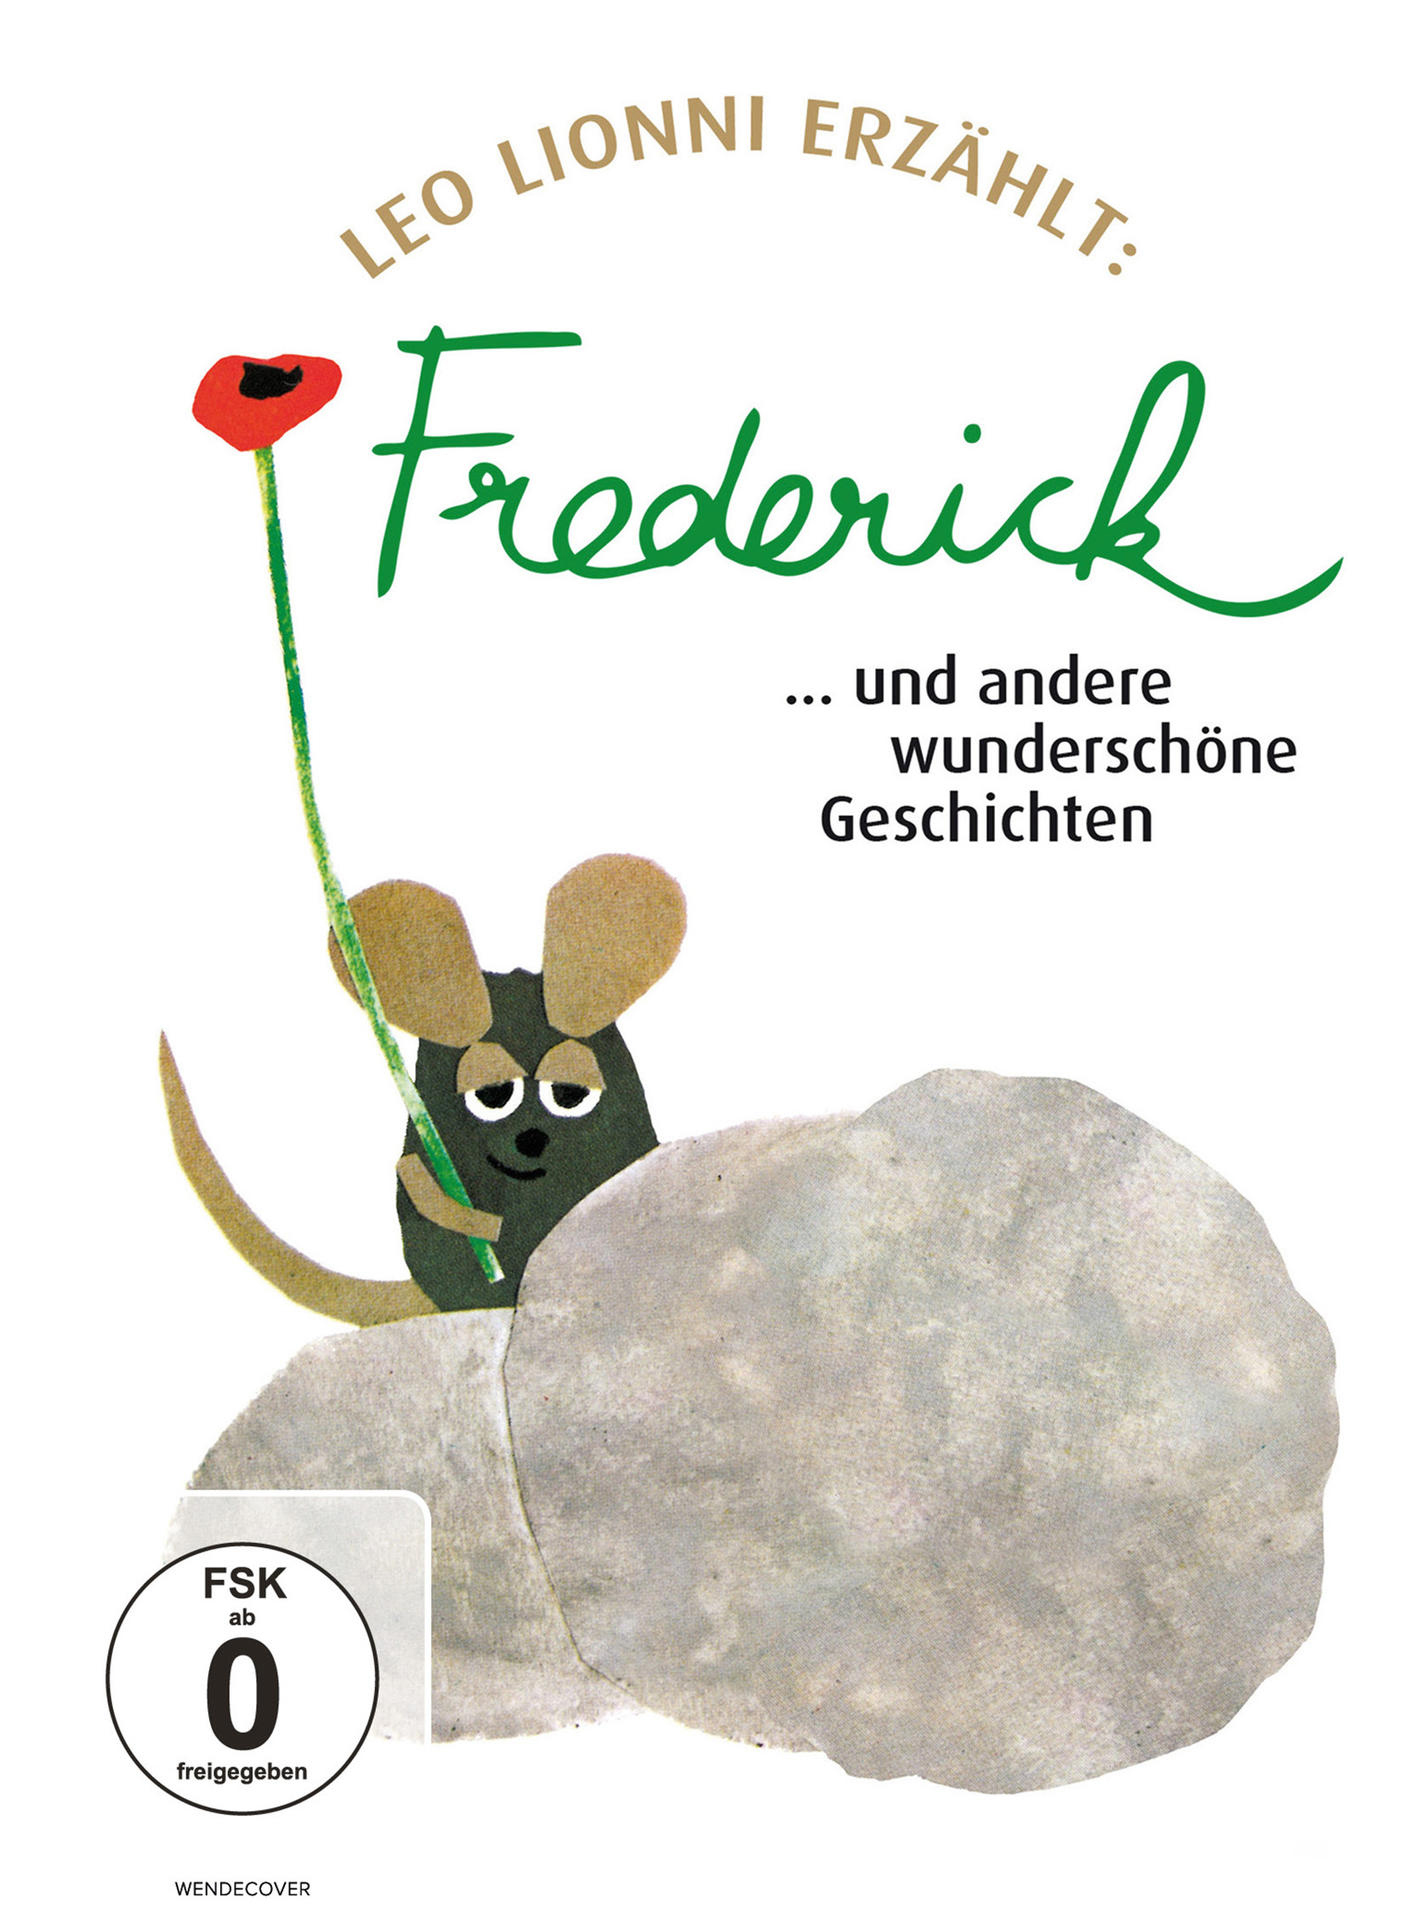 Geschichten und andere DVD Frederick... wunderschöne